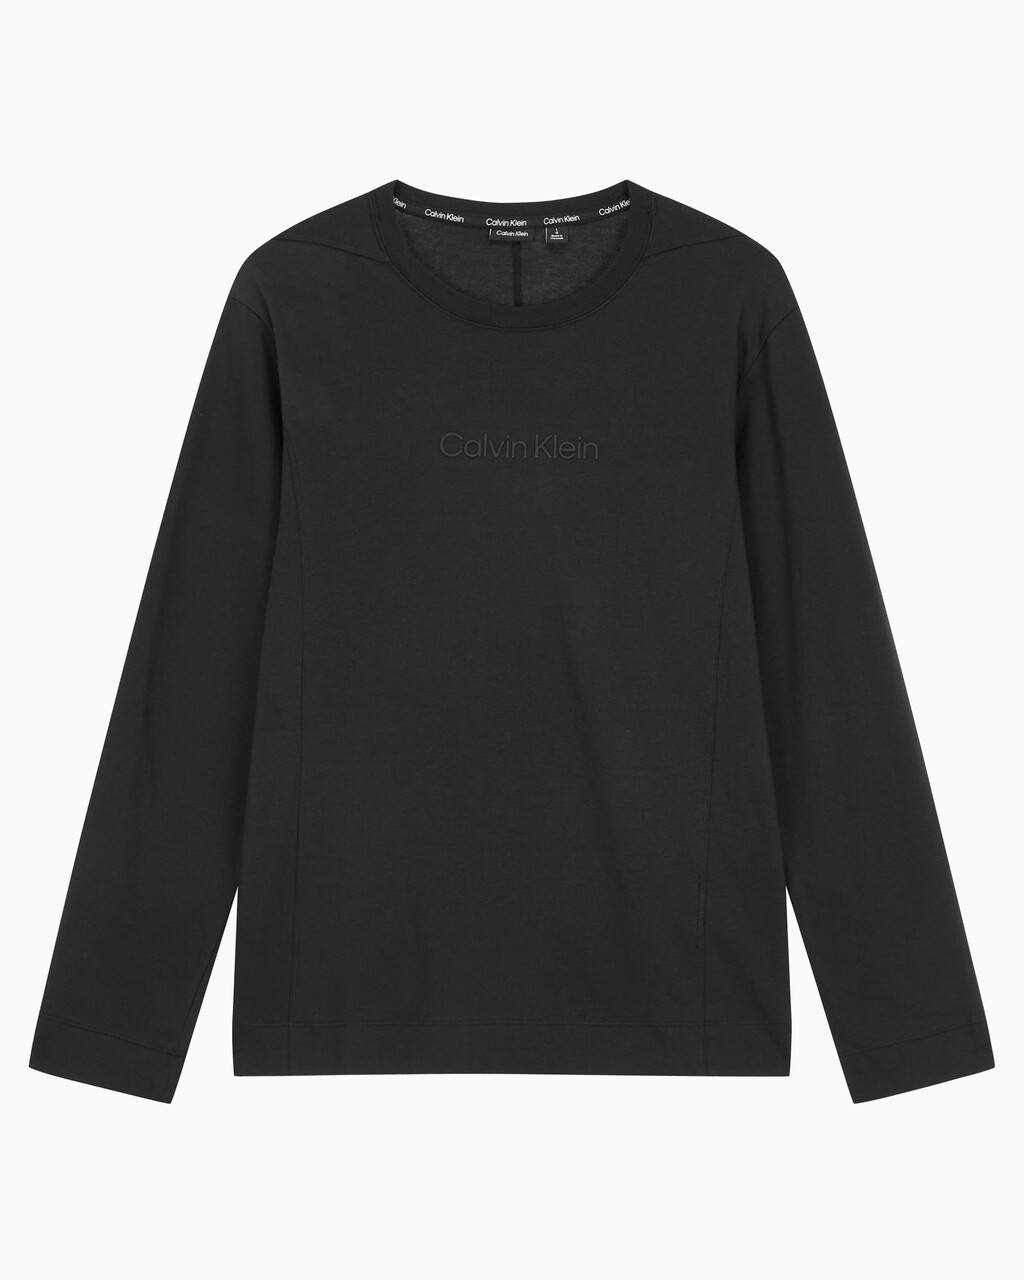 Buy 남성 레귤러핏 롱 슬리브 티셔츠 in color BLACK